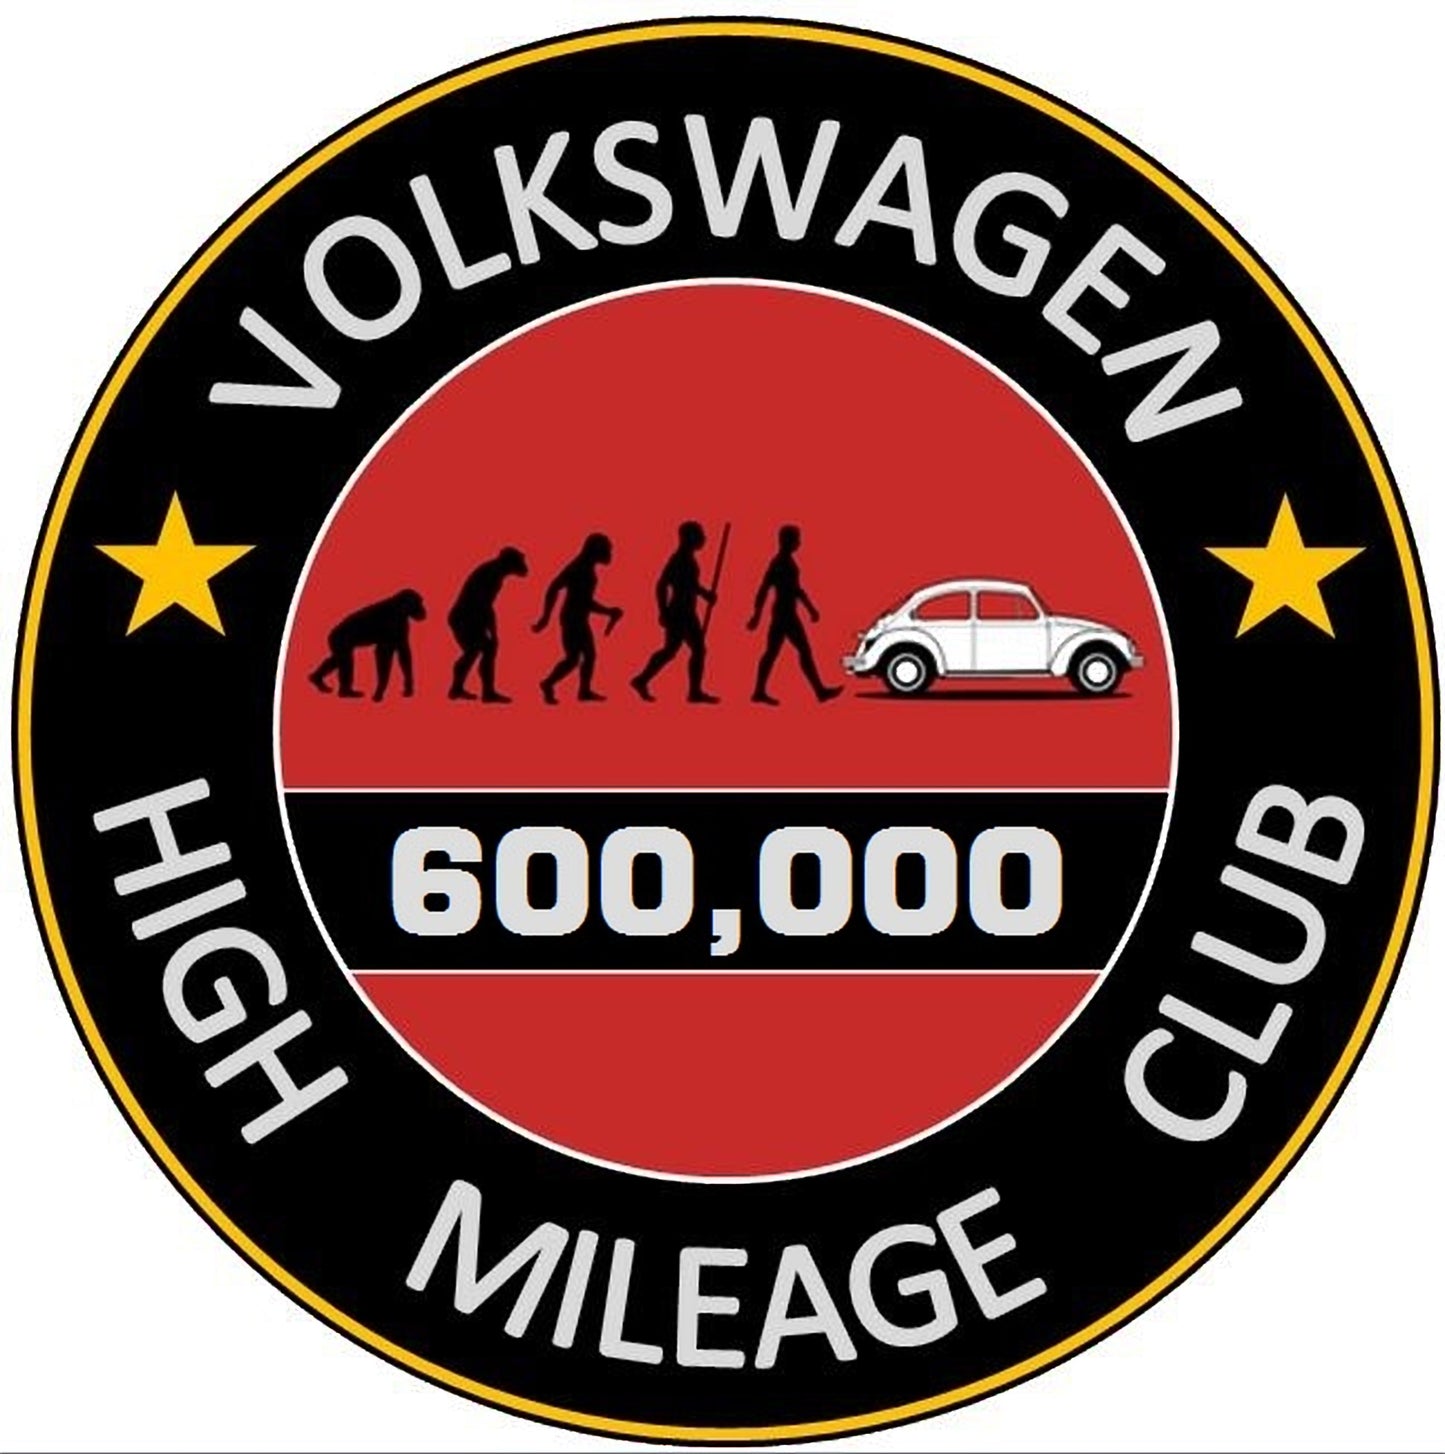 Volkswagen High Mileage Club Sticker